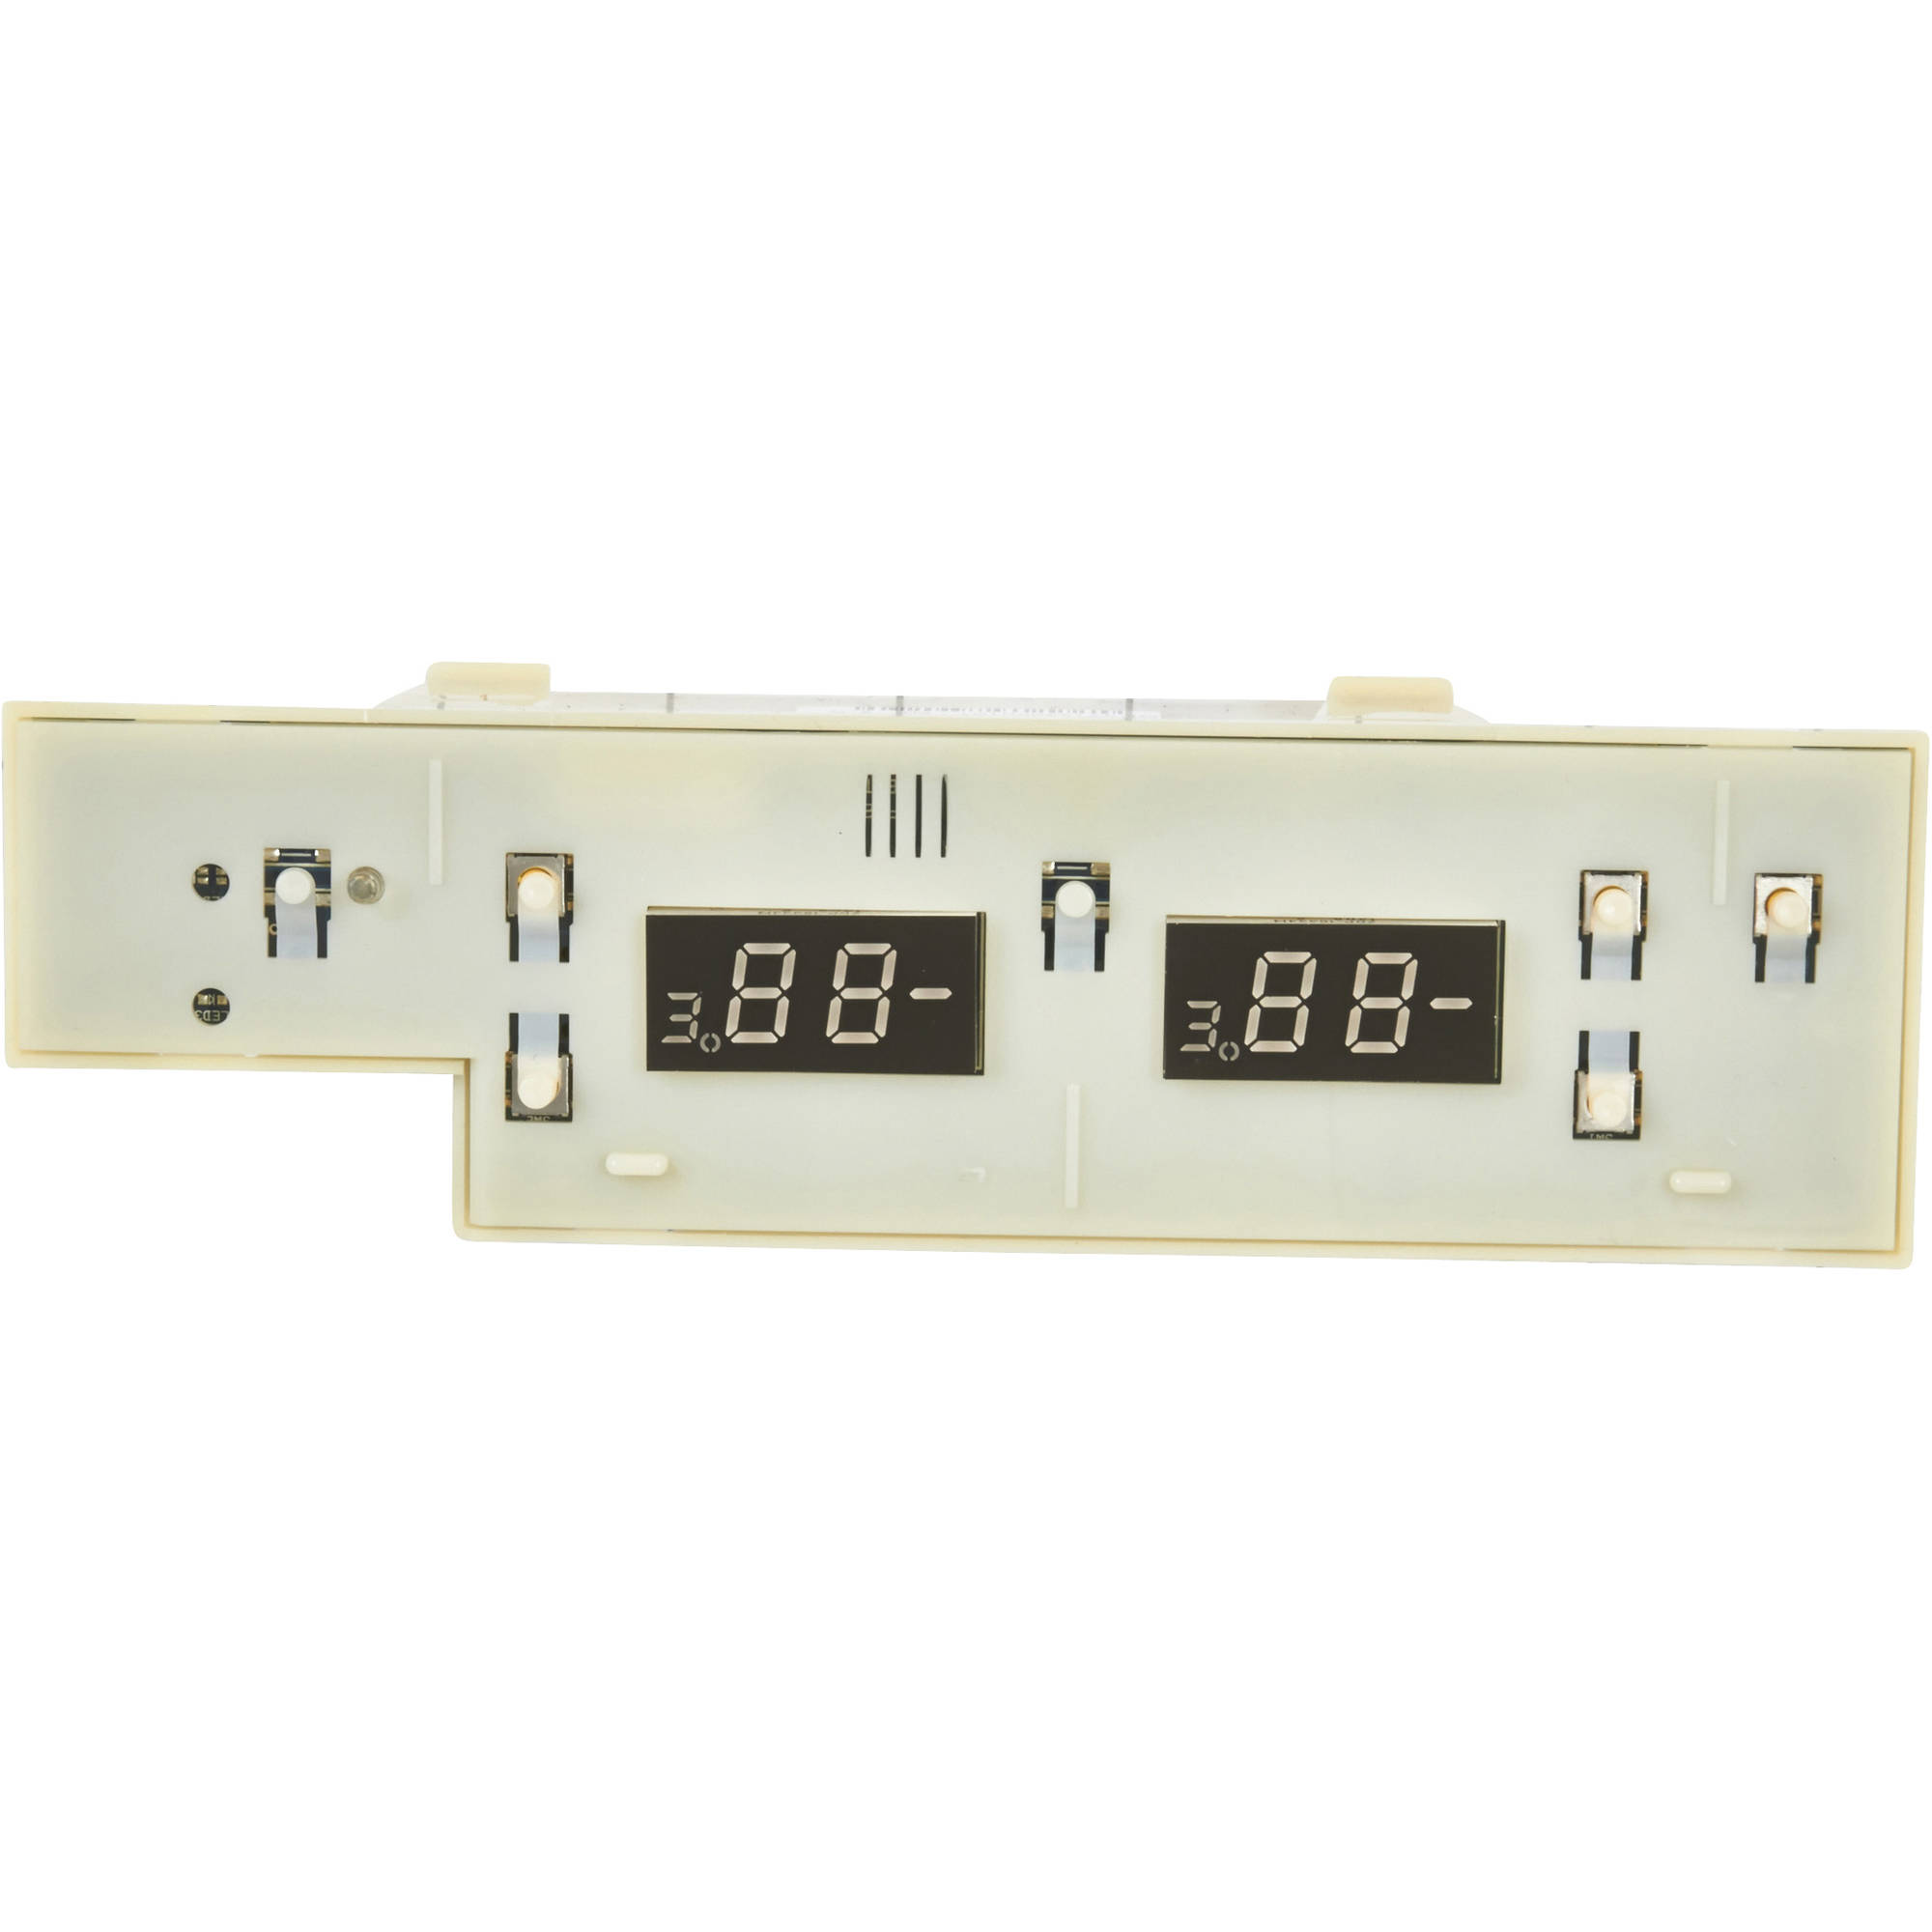 Frigidaire Refrigerator Temperature Control Board. Part #241739710